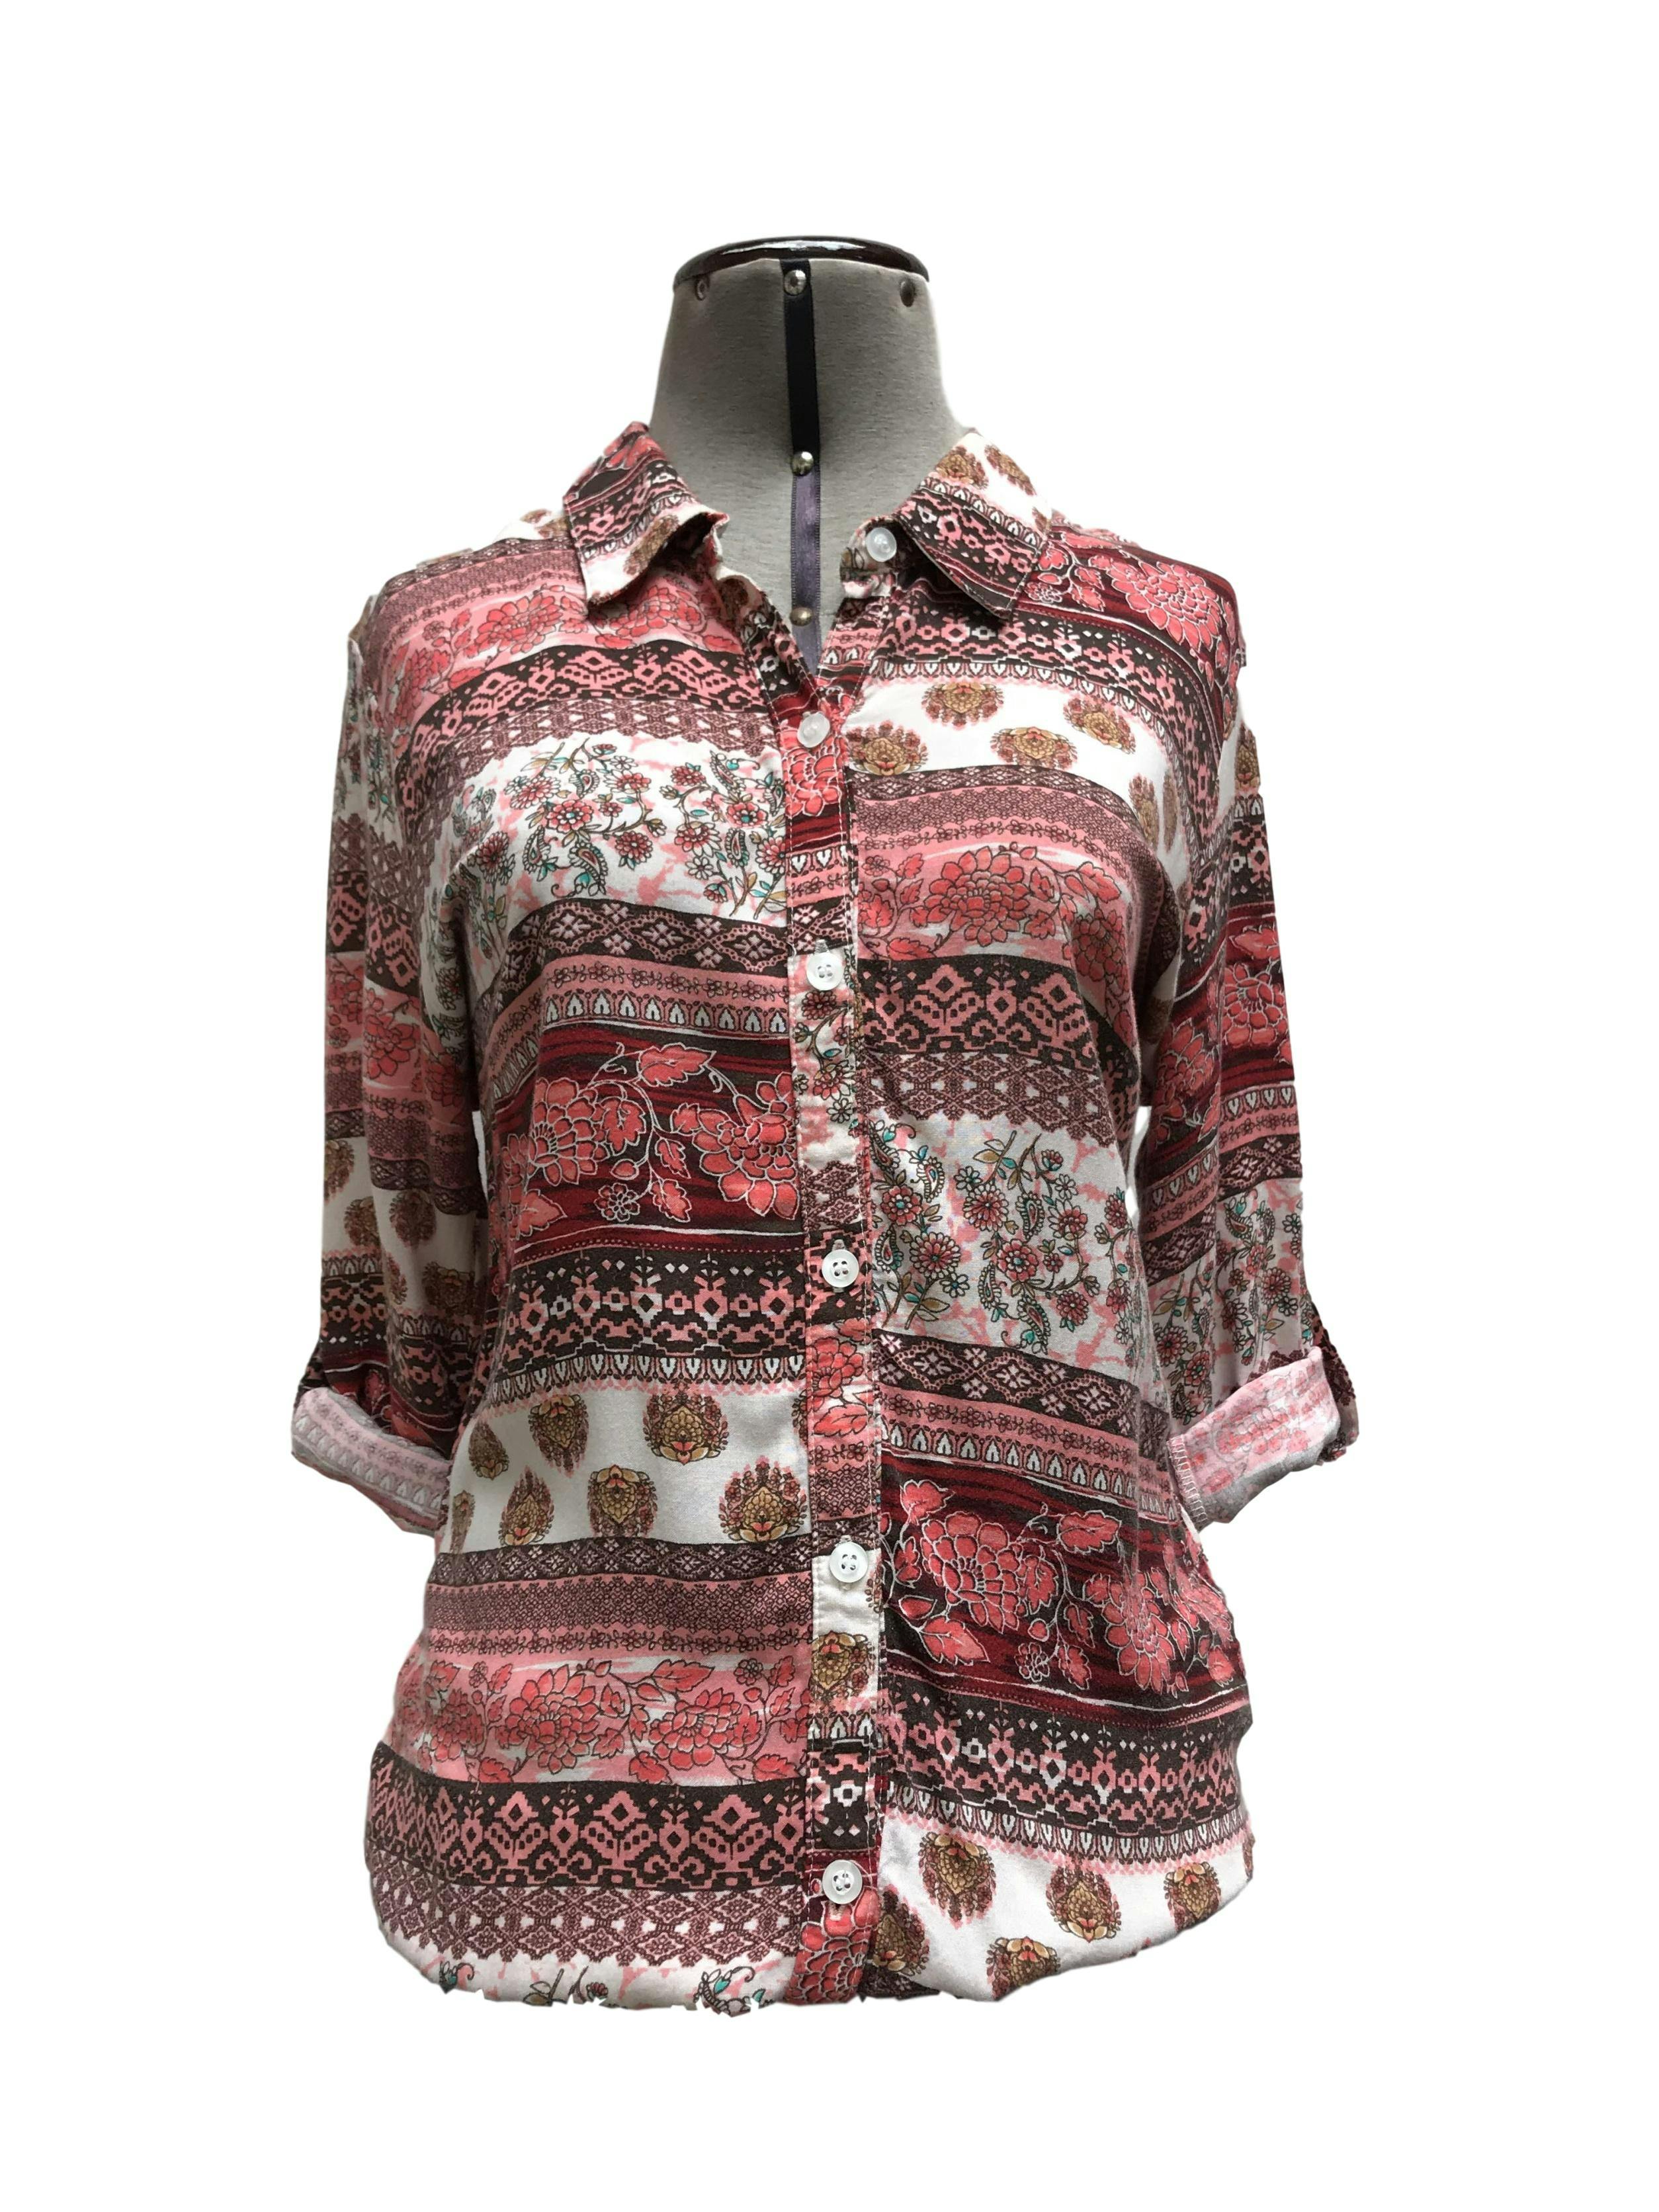 Blusa con estampado tribal en tonos coral, marrón y blanco, cuello camisero, fila de botones y elástico en las basta, manga regulable con botón
Talla S (puede ser M chico)